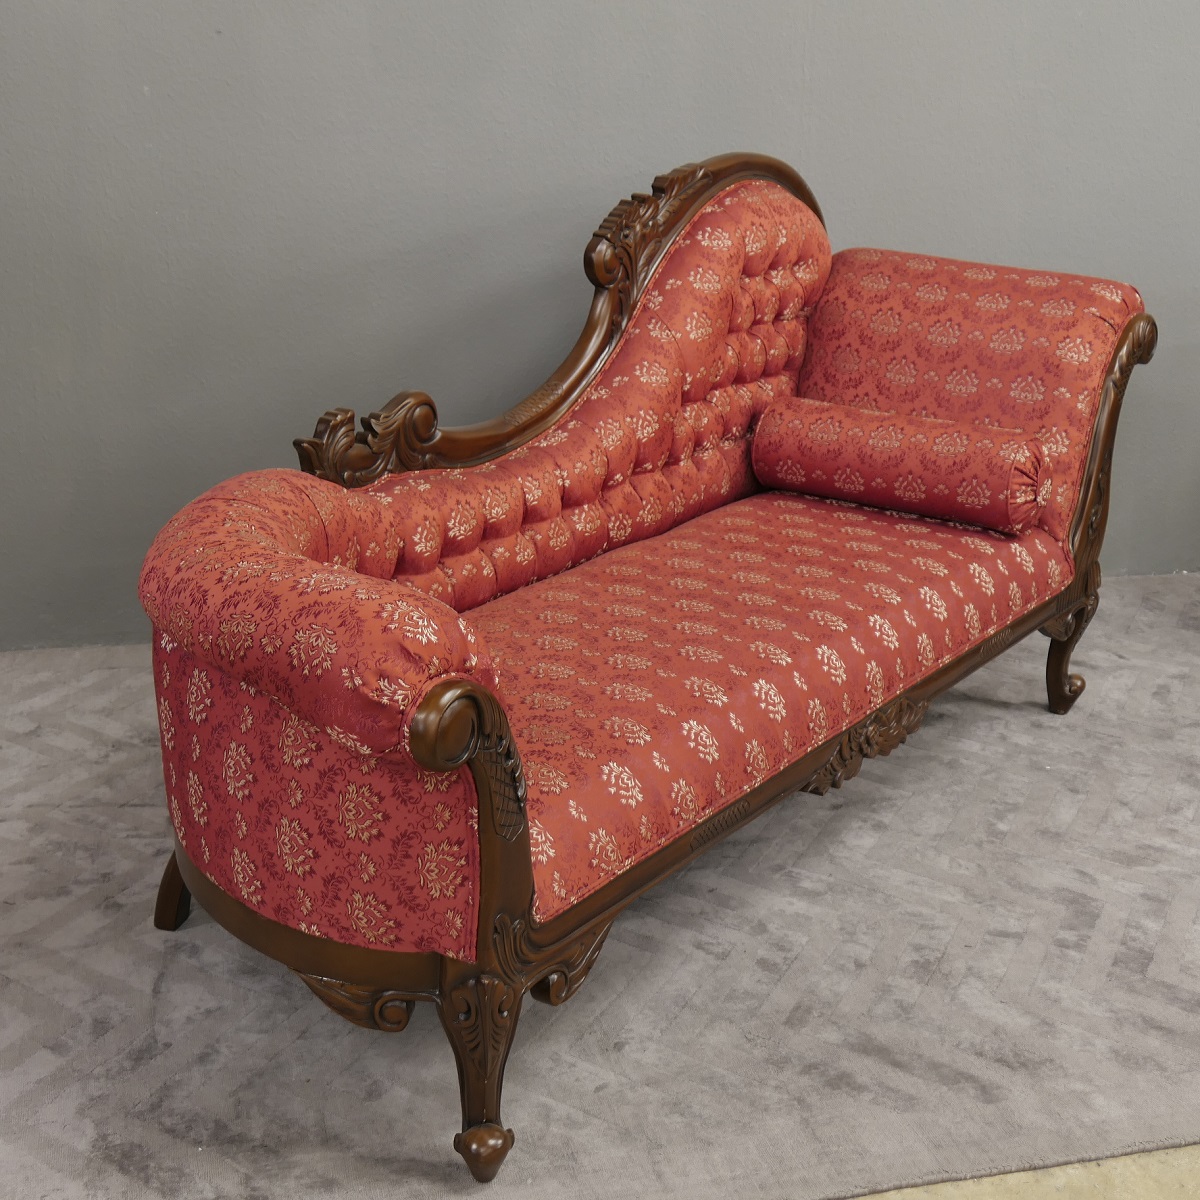 Wunderschöne Couch Recamiere Ottomane Mahagoni brown Walnuss Bezug Textil